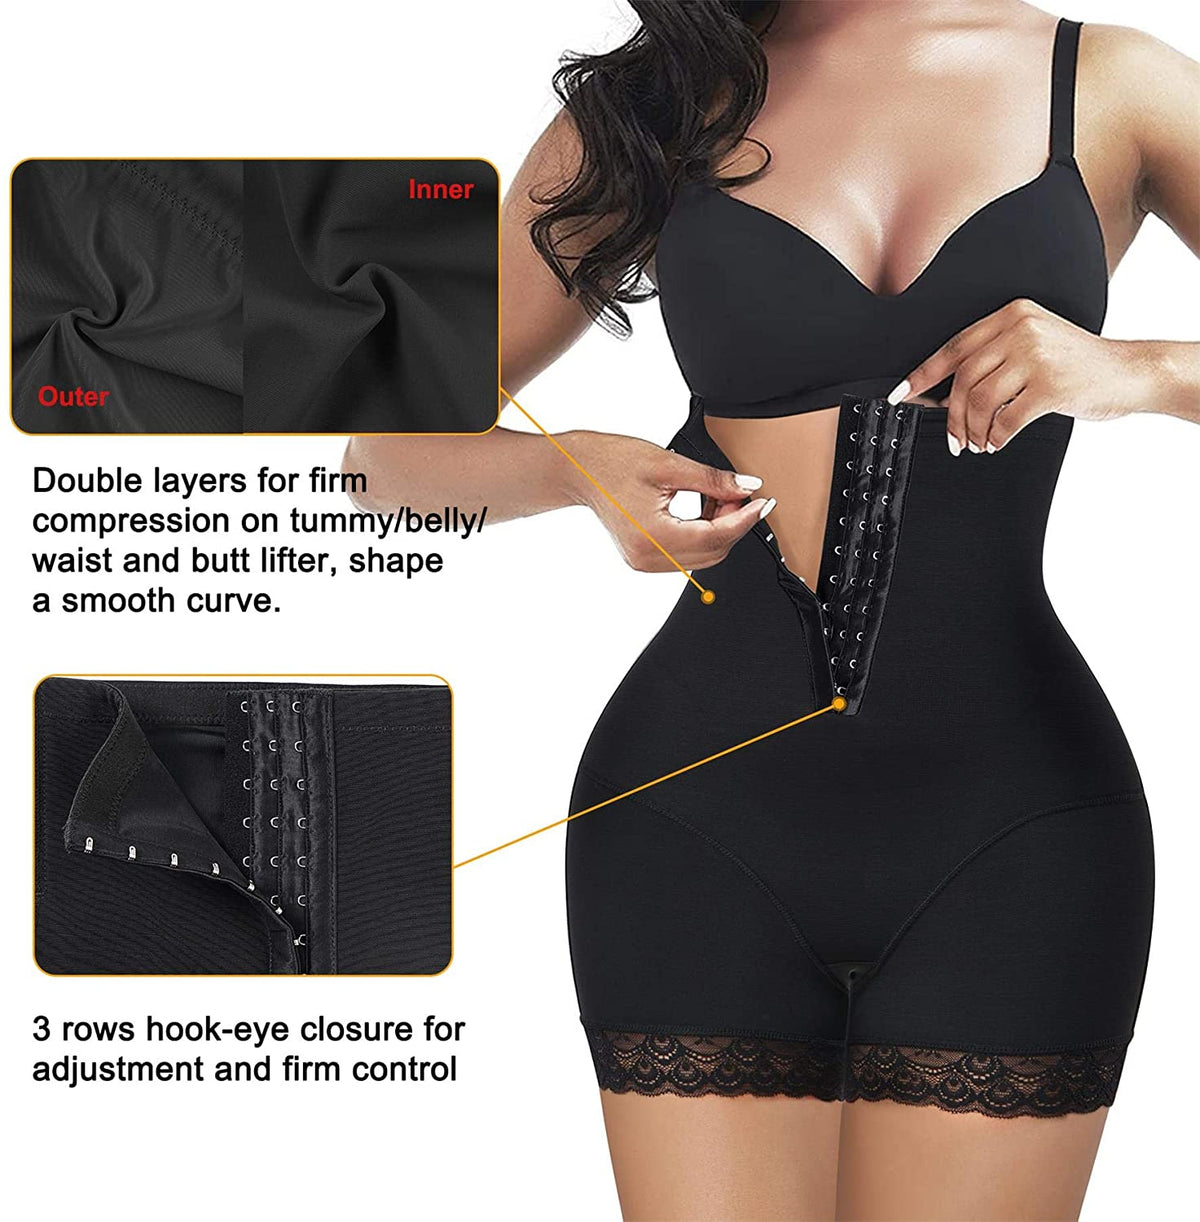 Women High Waist Adjustable Cincher Black Butt Lifter With Lace Edge - Nebility